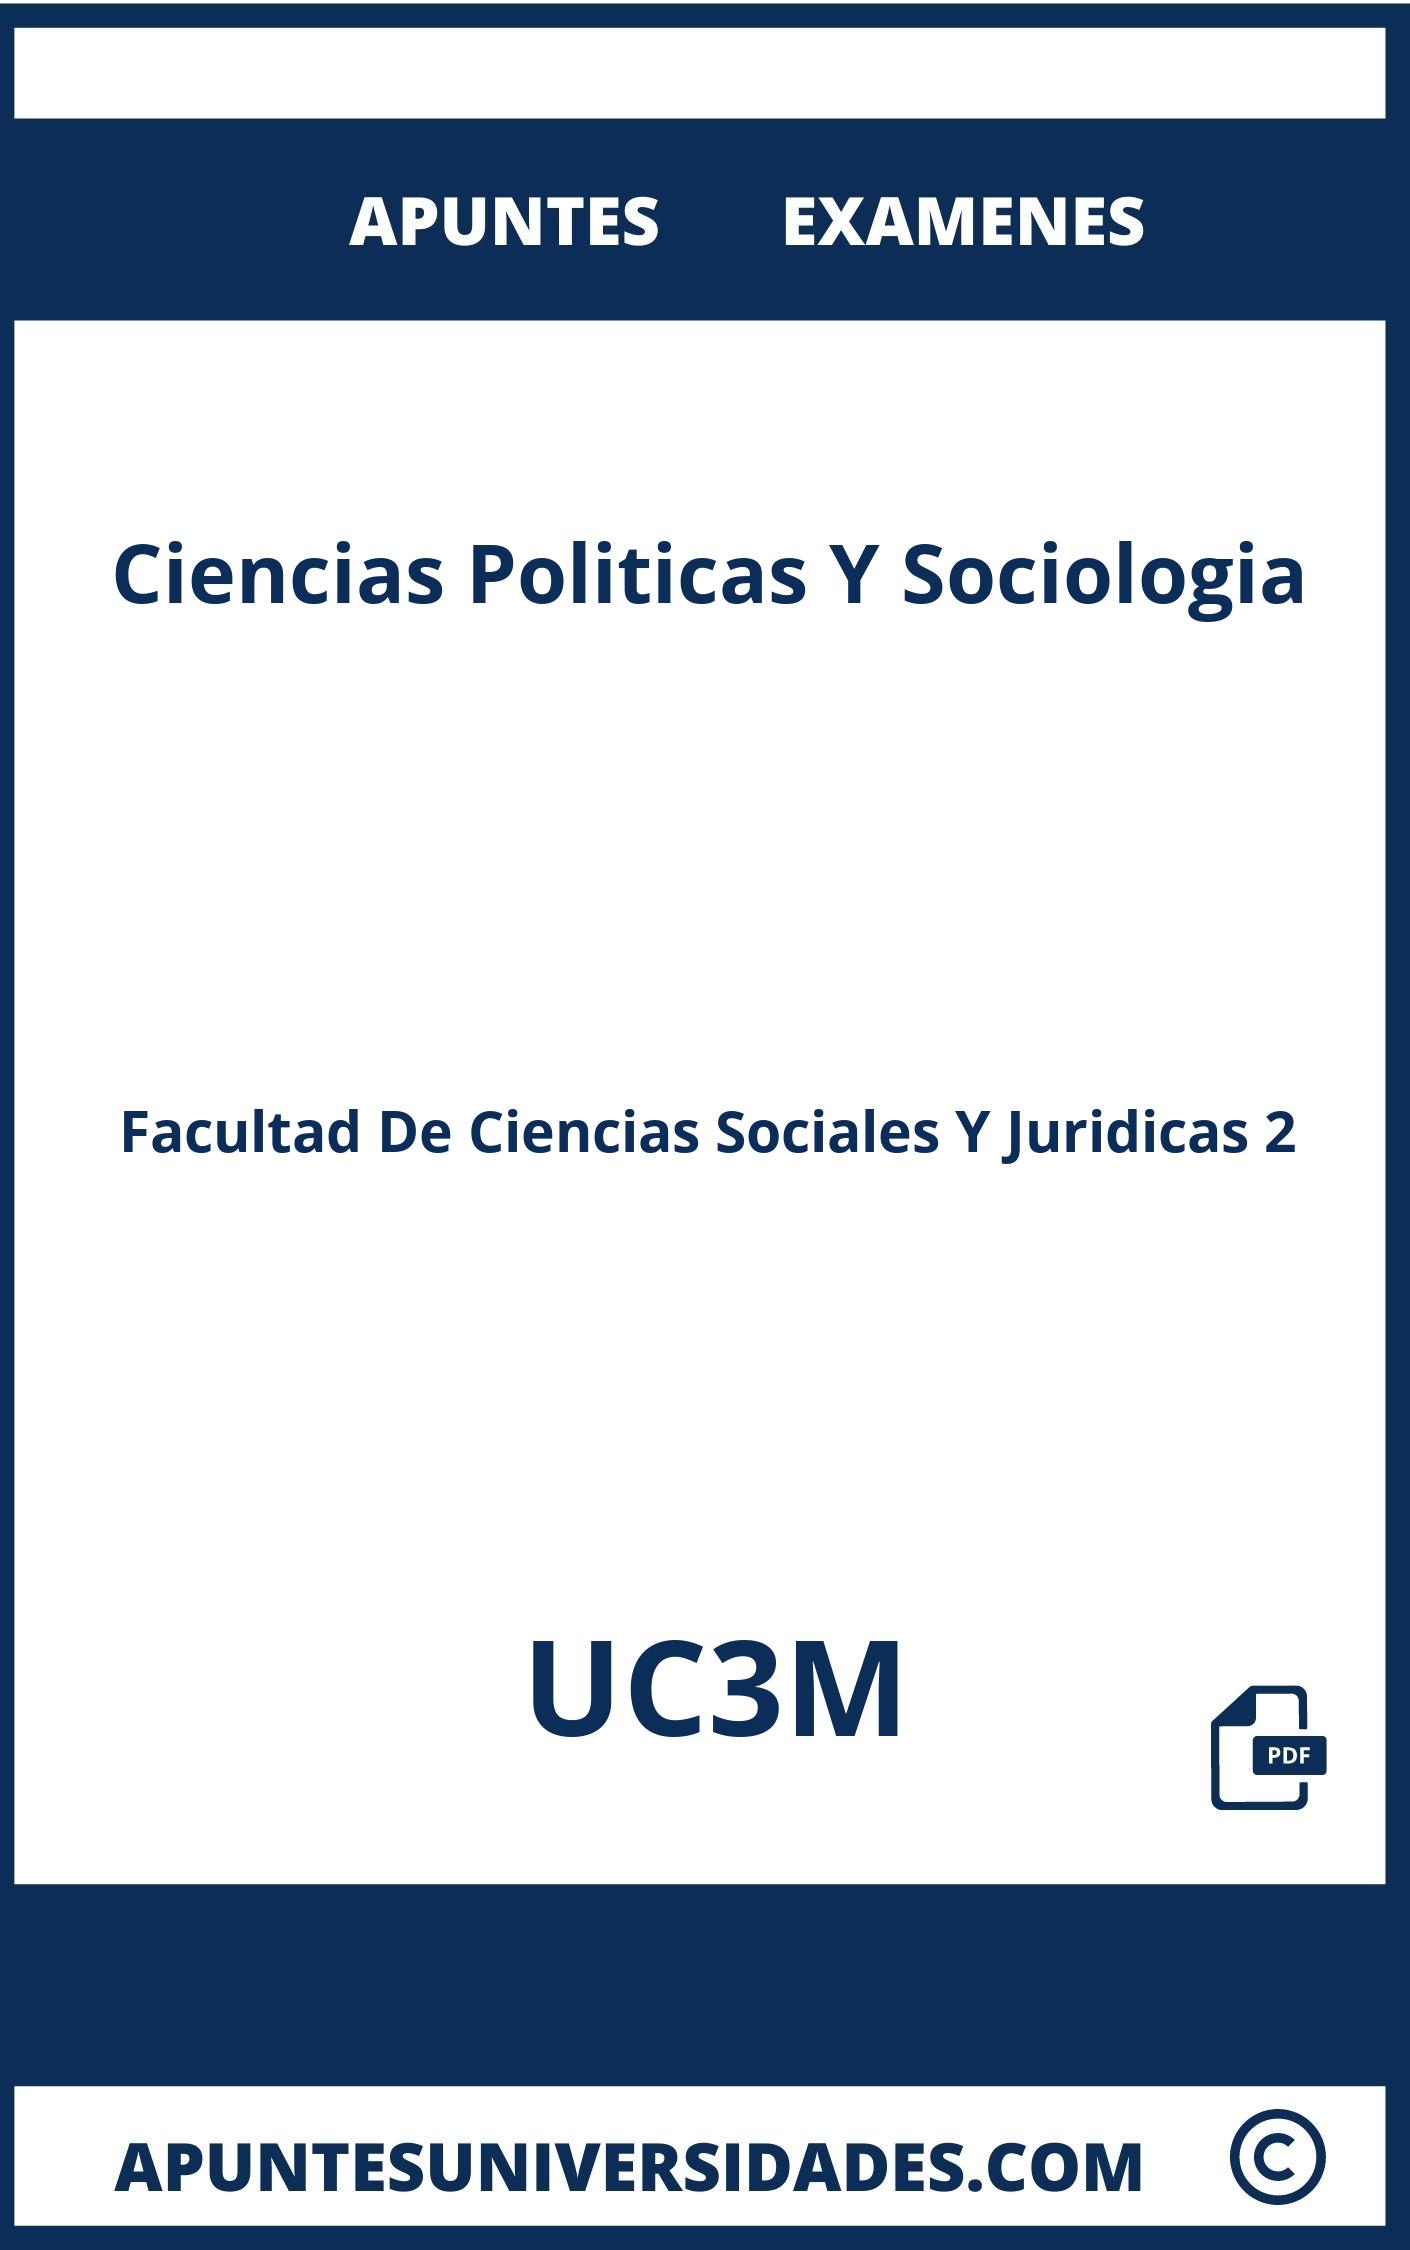 Apuntes Ciencias Politicas Y Sociologia UC3M y Examenes